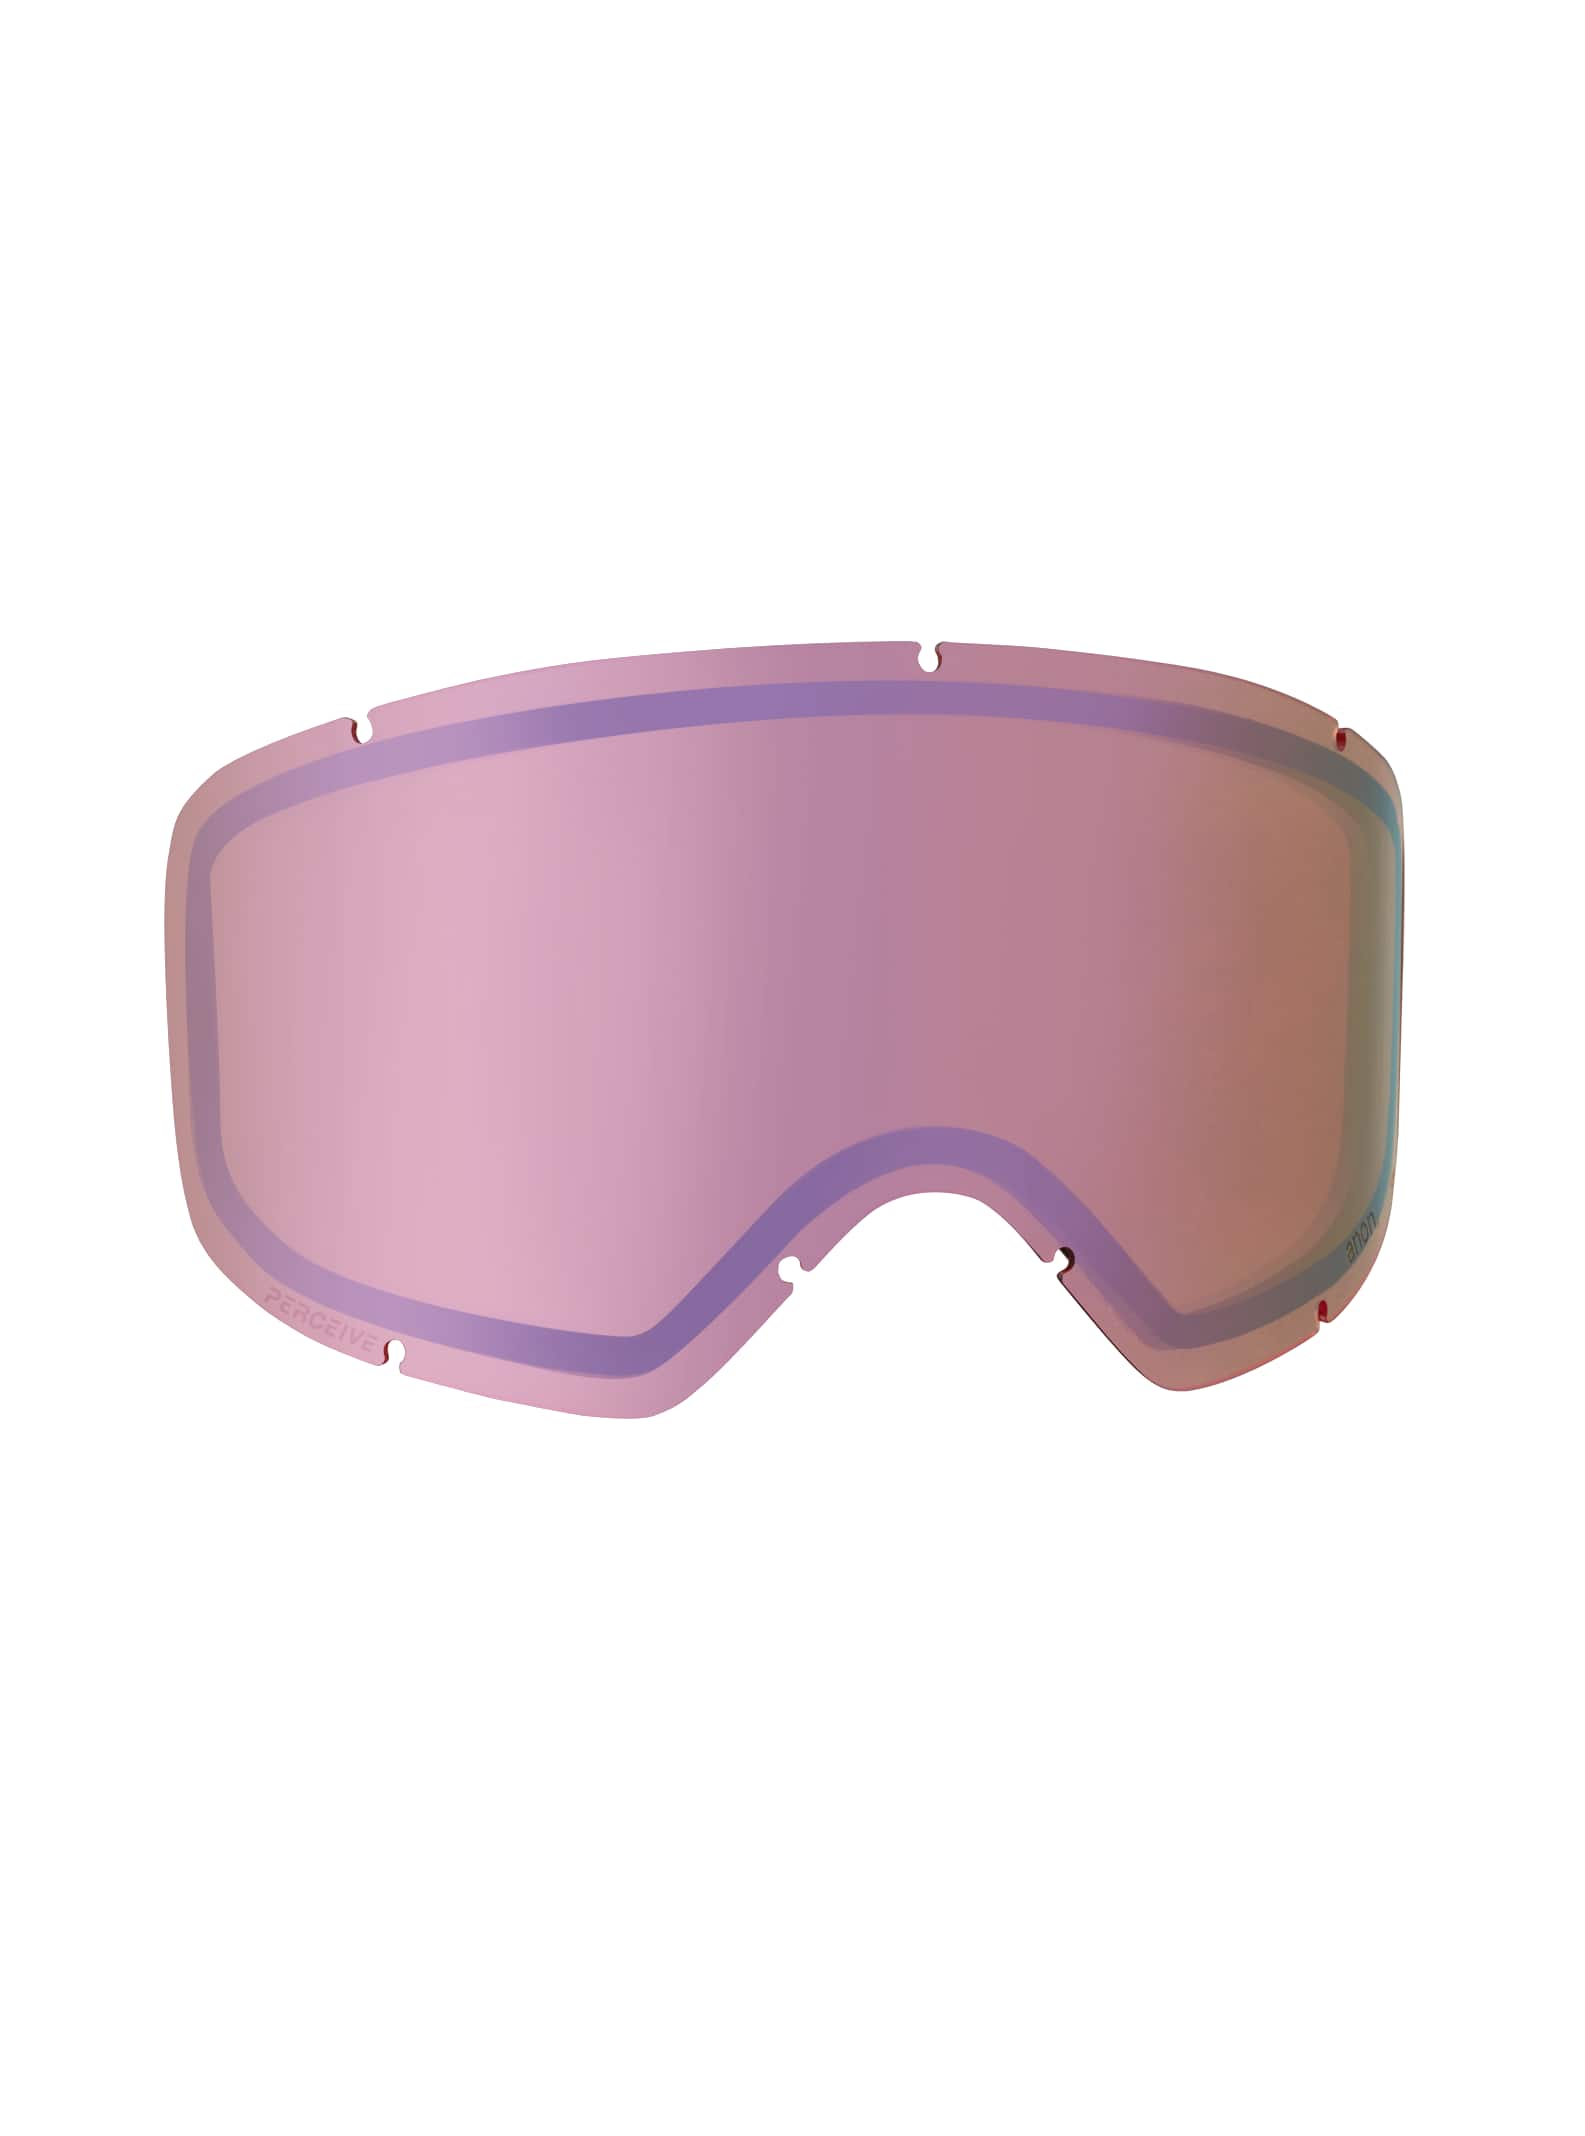 Anon - Écran pour masque Deringer PERCEIVE, Perceive Cloudy Pink (53% / S1)